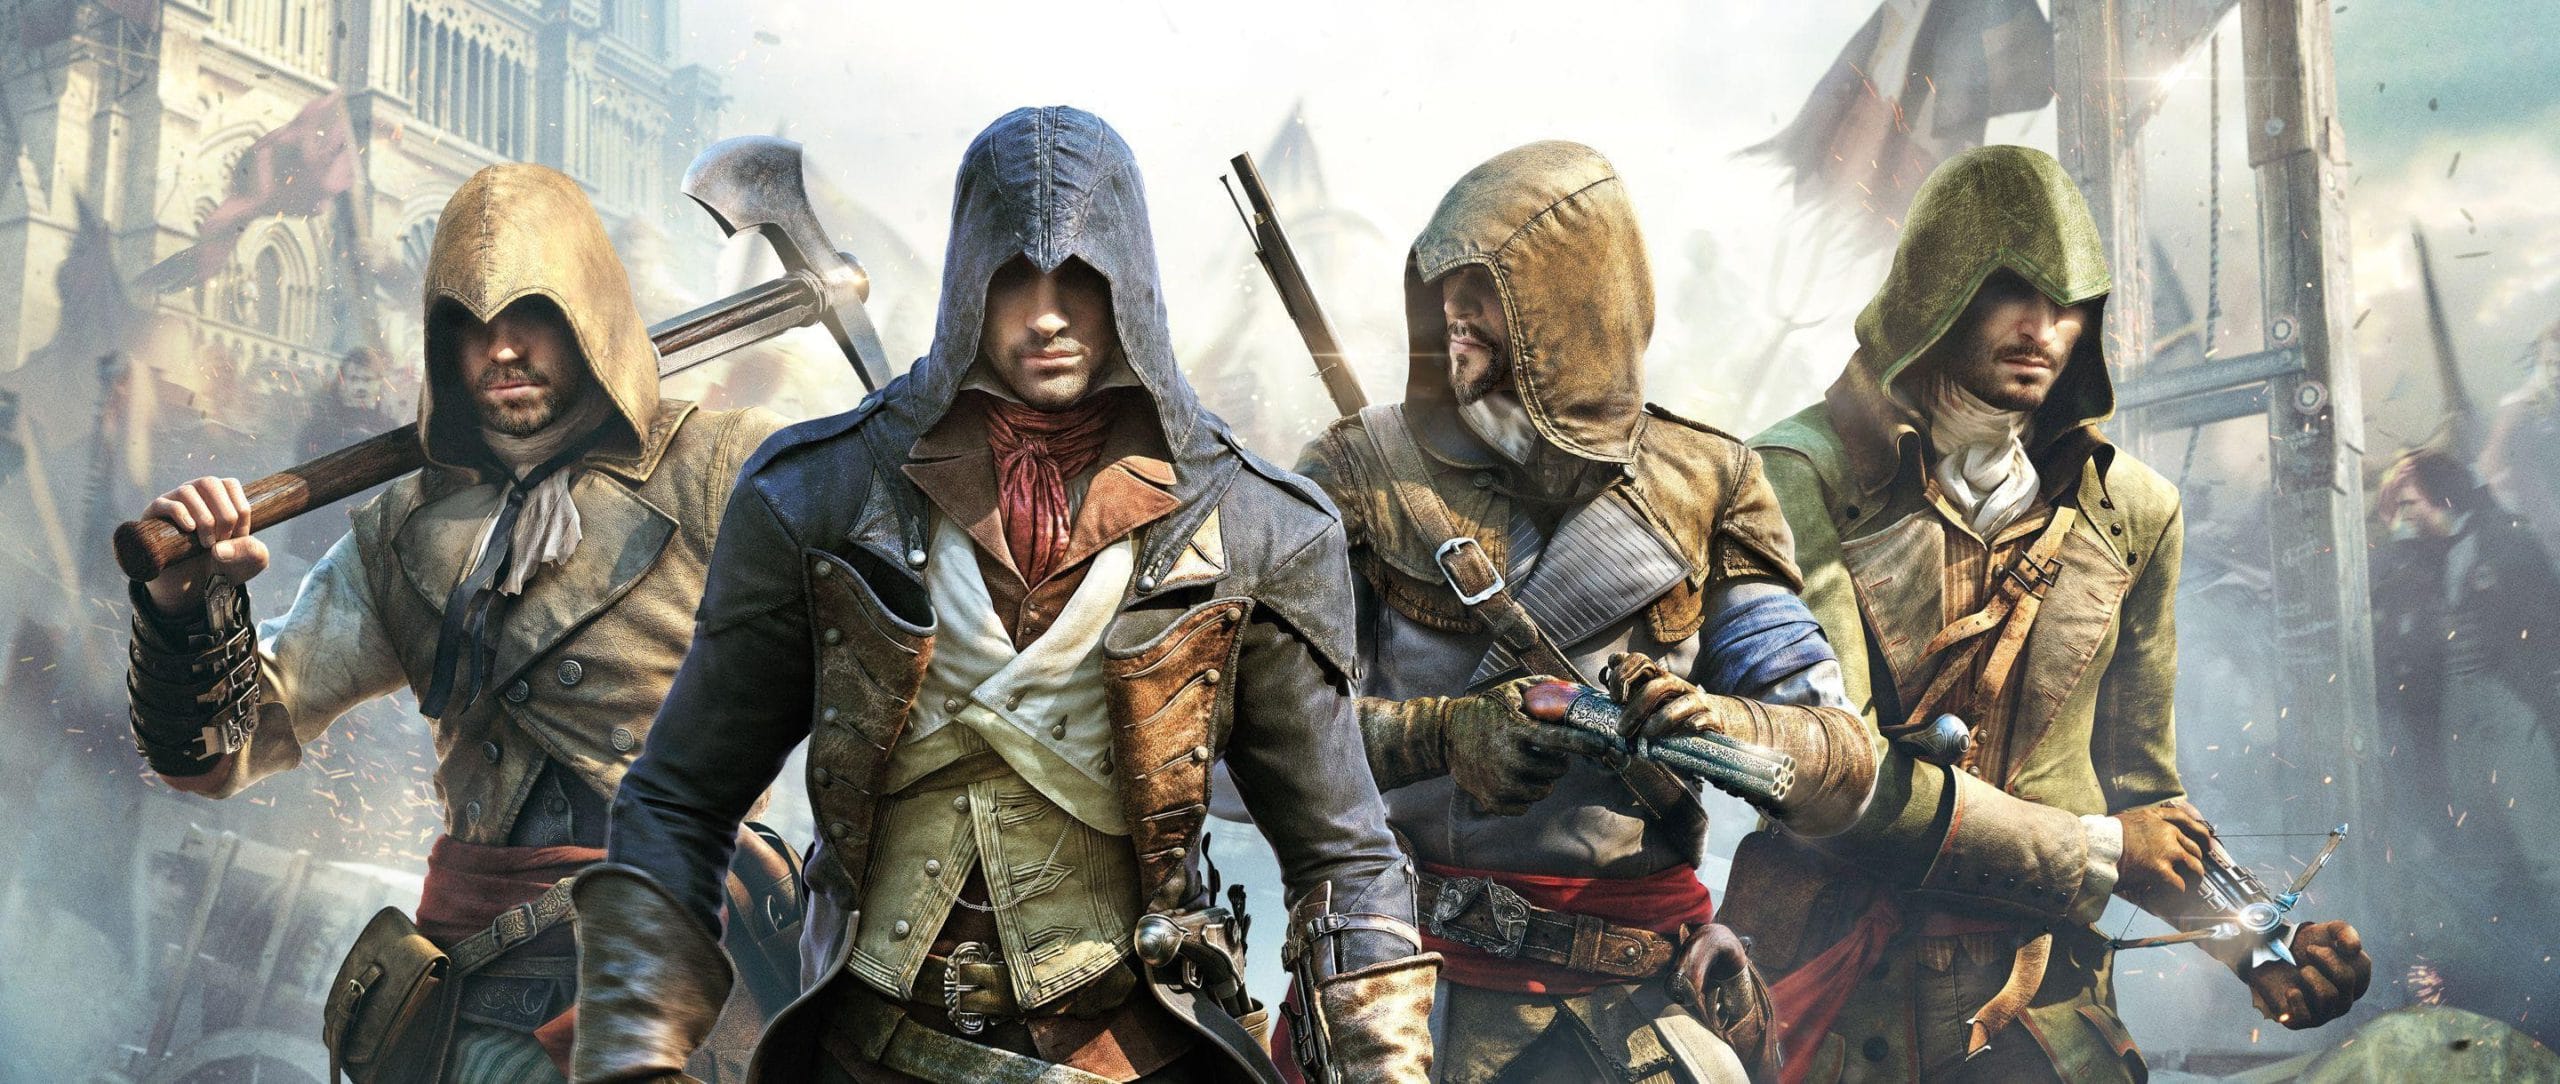 دراسة جودة: Assassin's Creed Unity